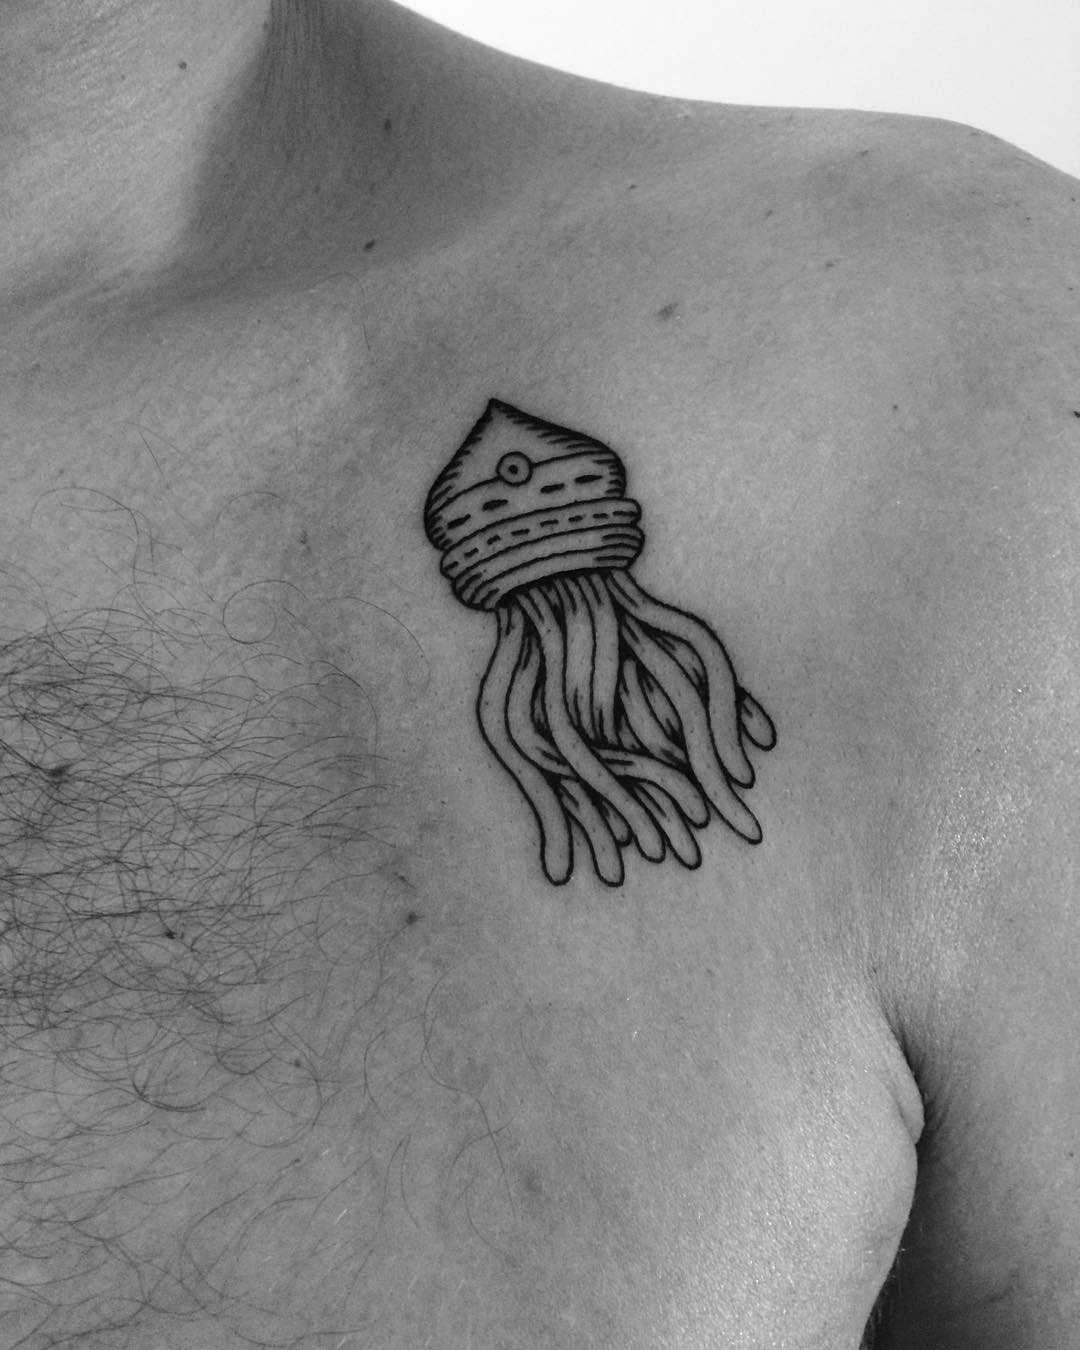 Stylized jellyfish tattoo